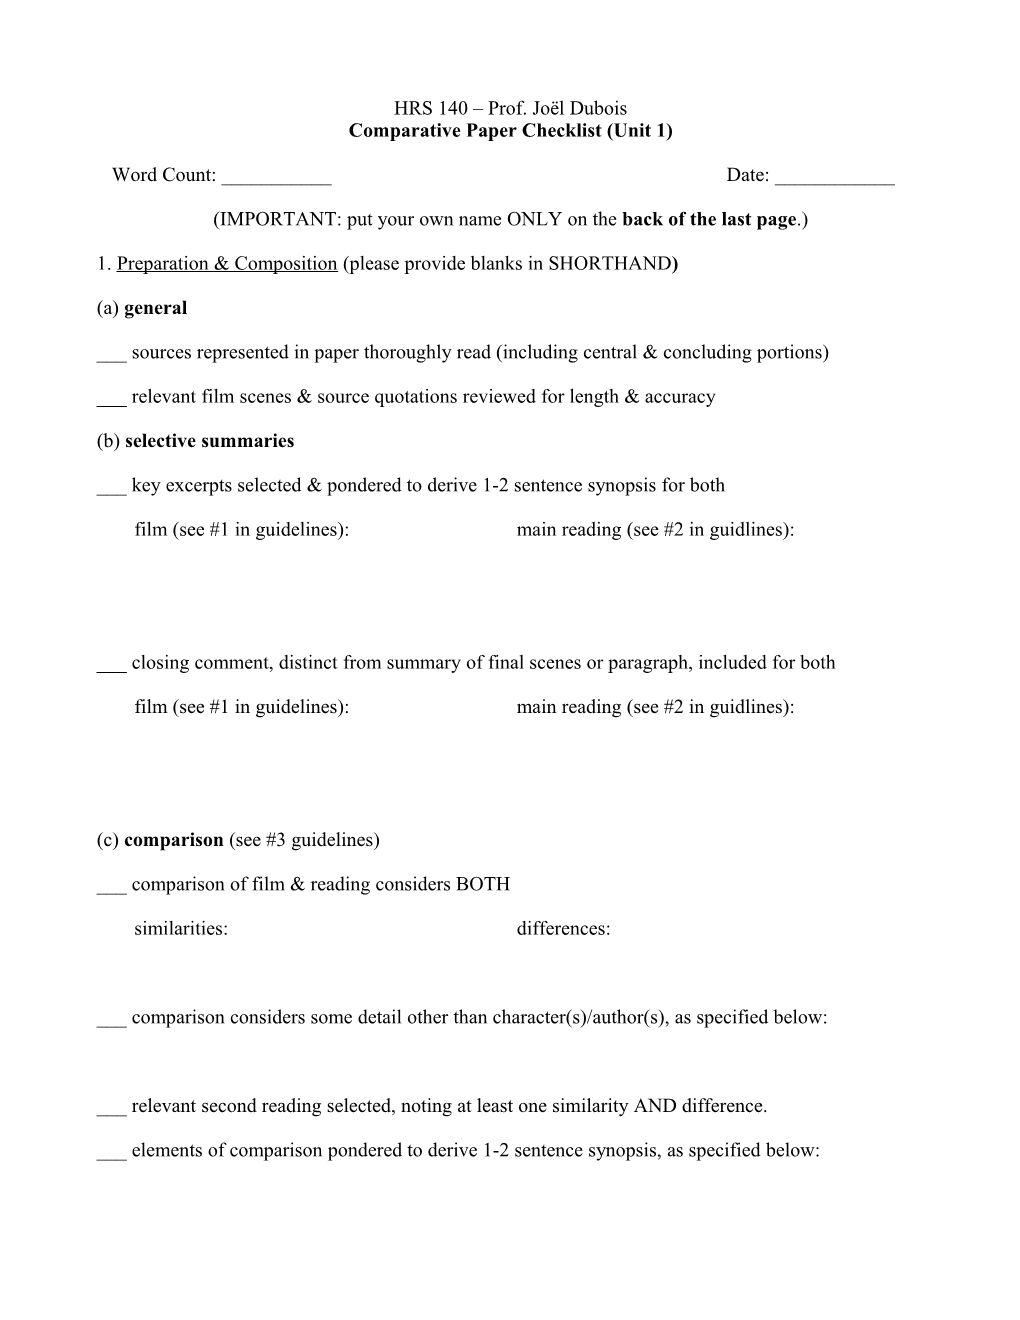 Comparative Paper Checklist (Unit 1)